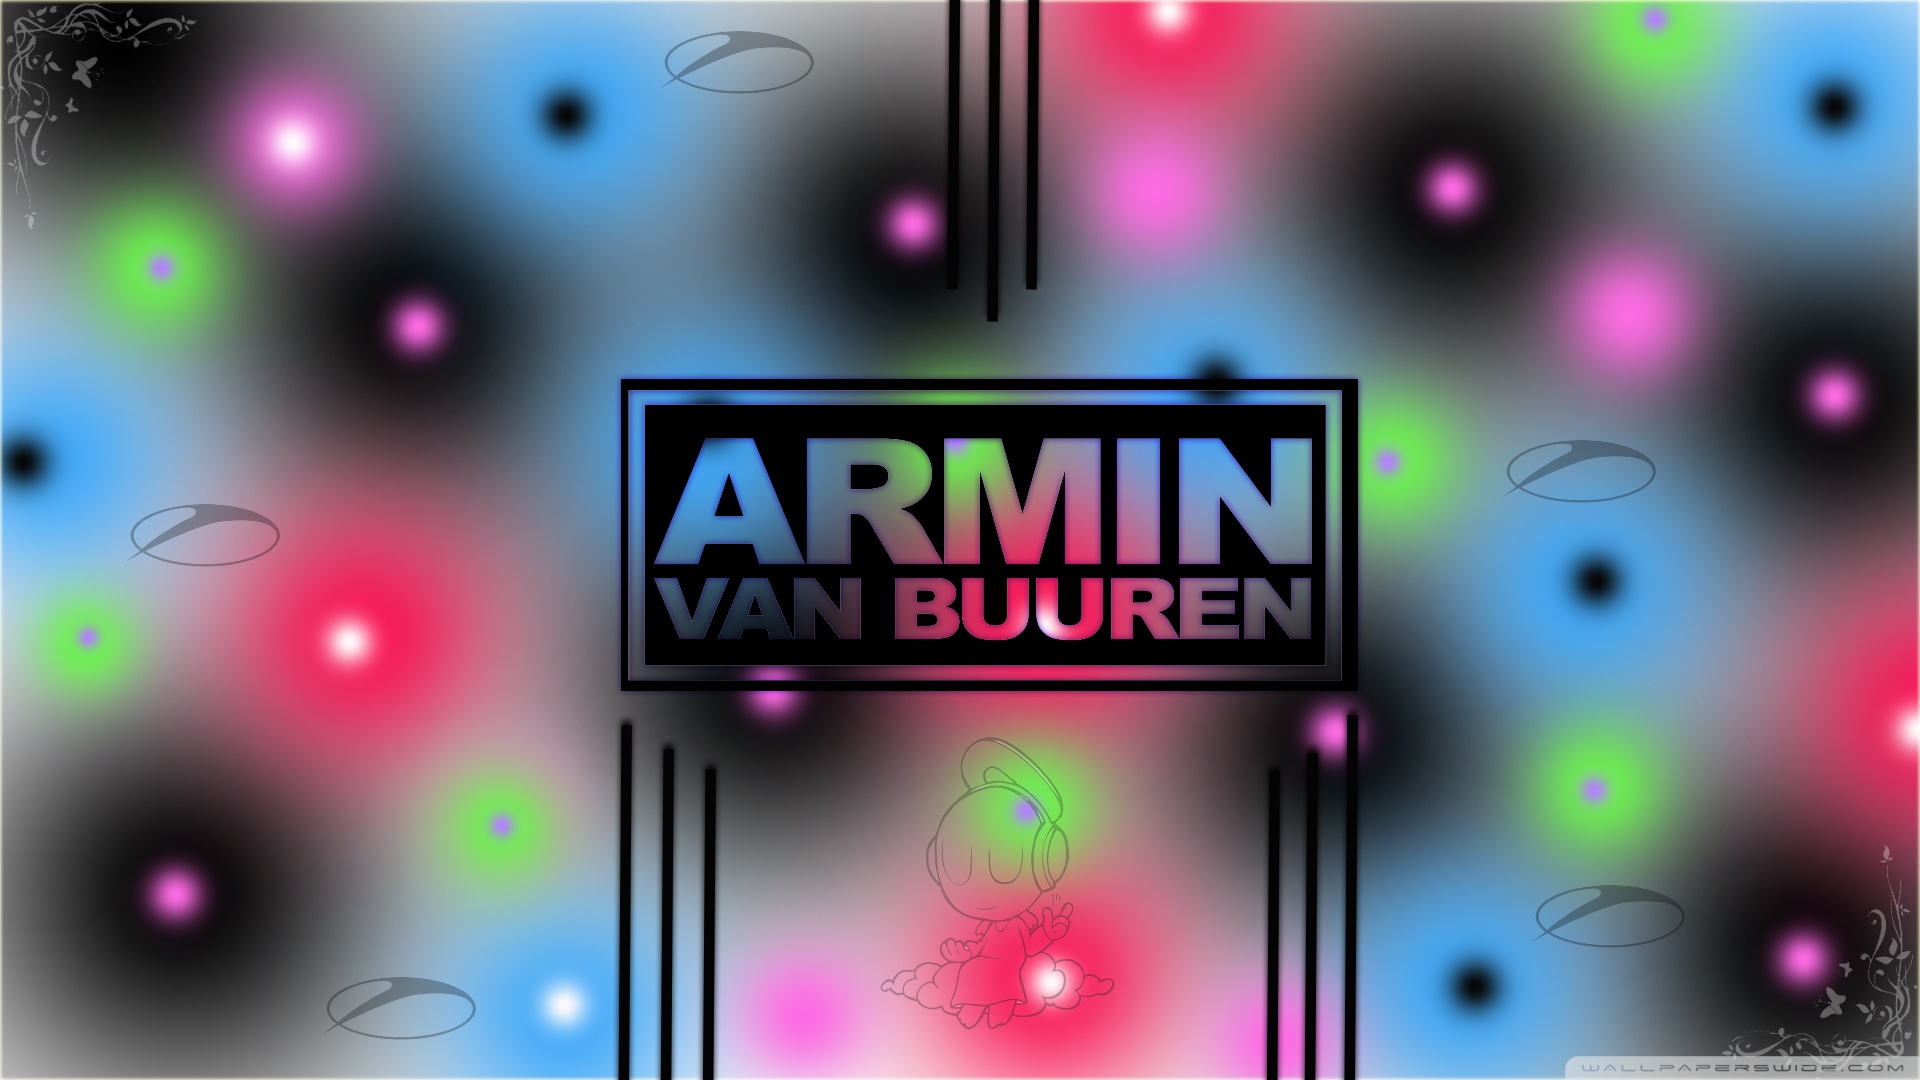 Armin Van Buuren Wallpaper - Armin Van Buuren Wallpaper 2012 , HD Wallpaper & Backgrounds